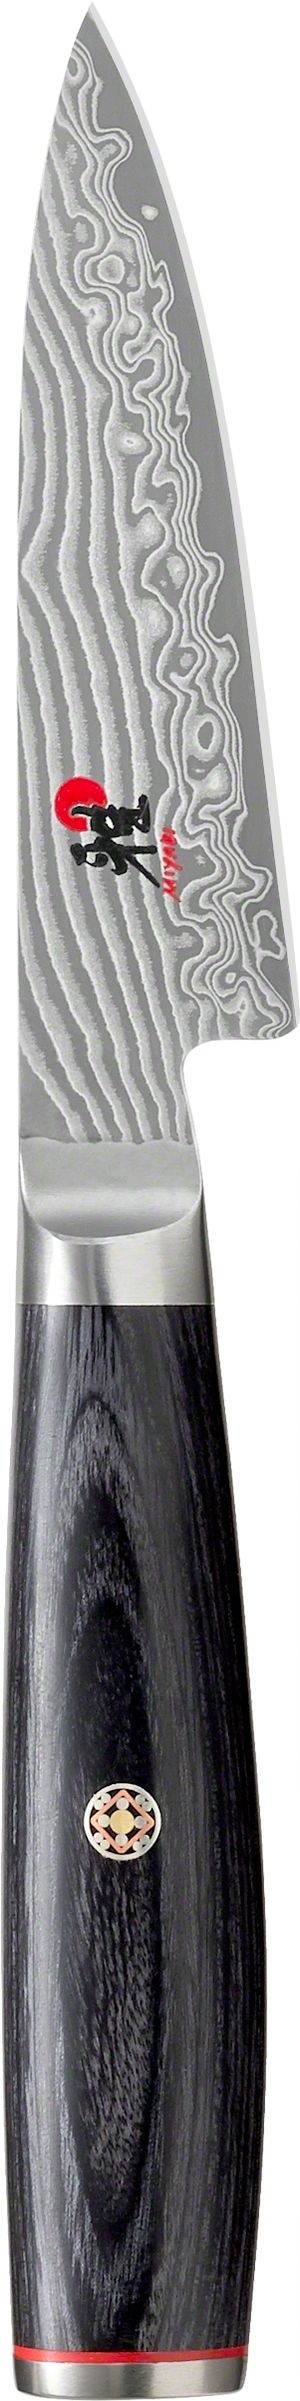 5000FCD Shotoh (Paring) Knife - 9cm